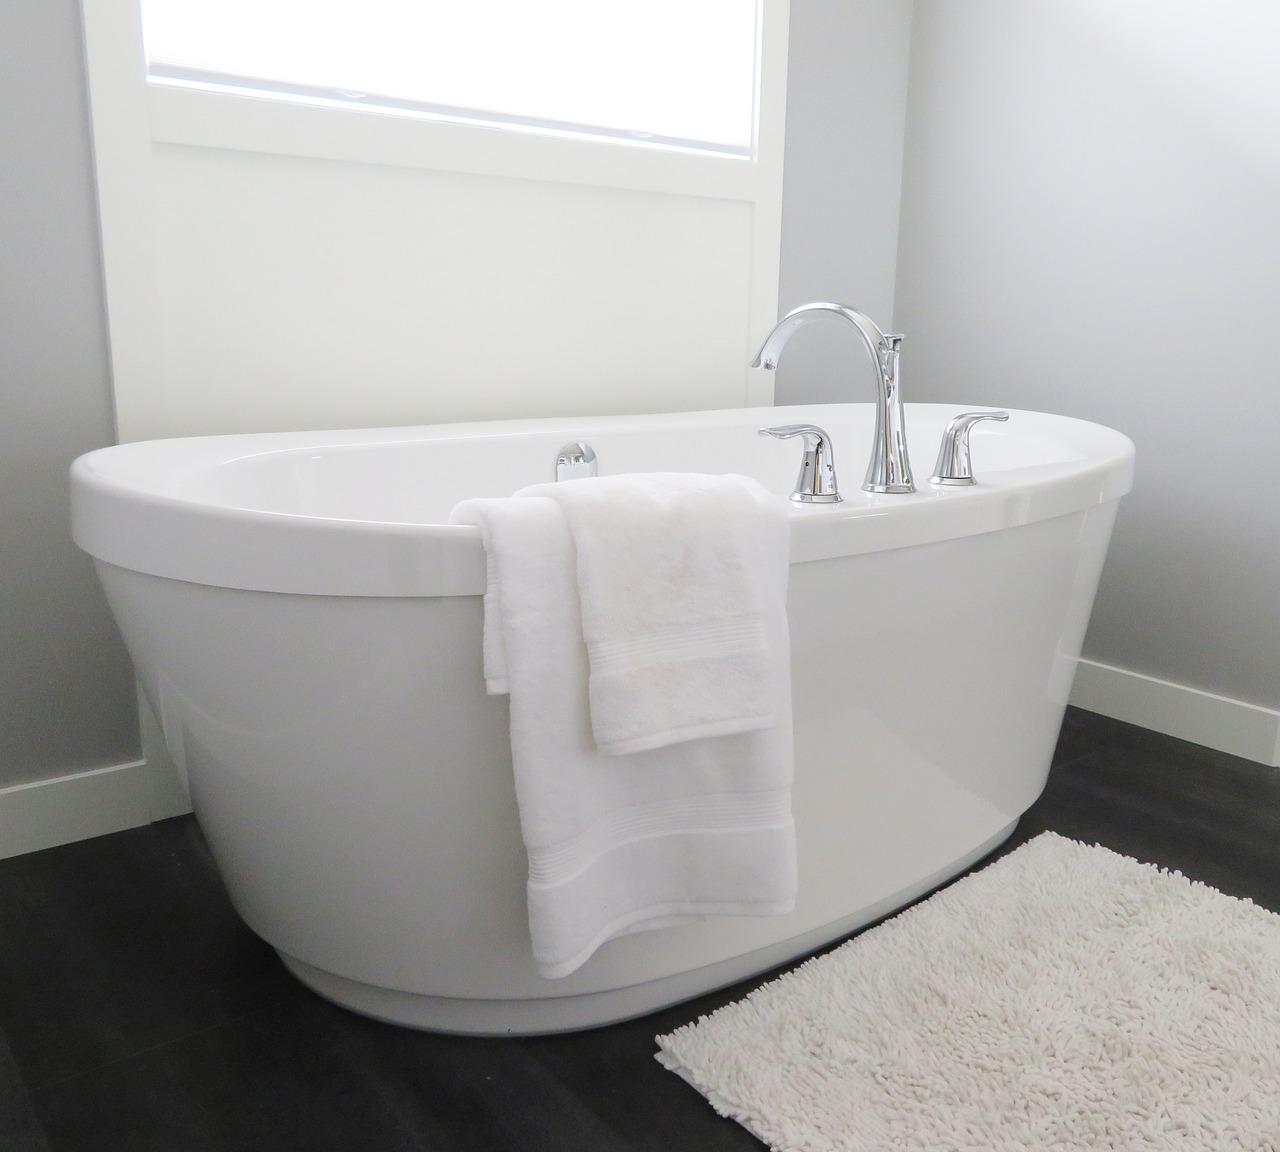 Freistehende Badewanne – welche sollte man wählen? Was ist beim Kauf zu beachten?